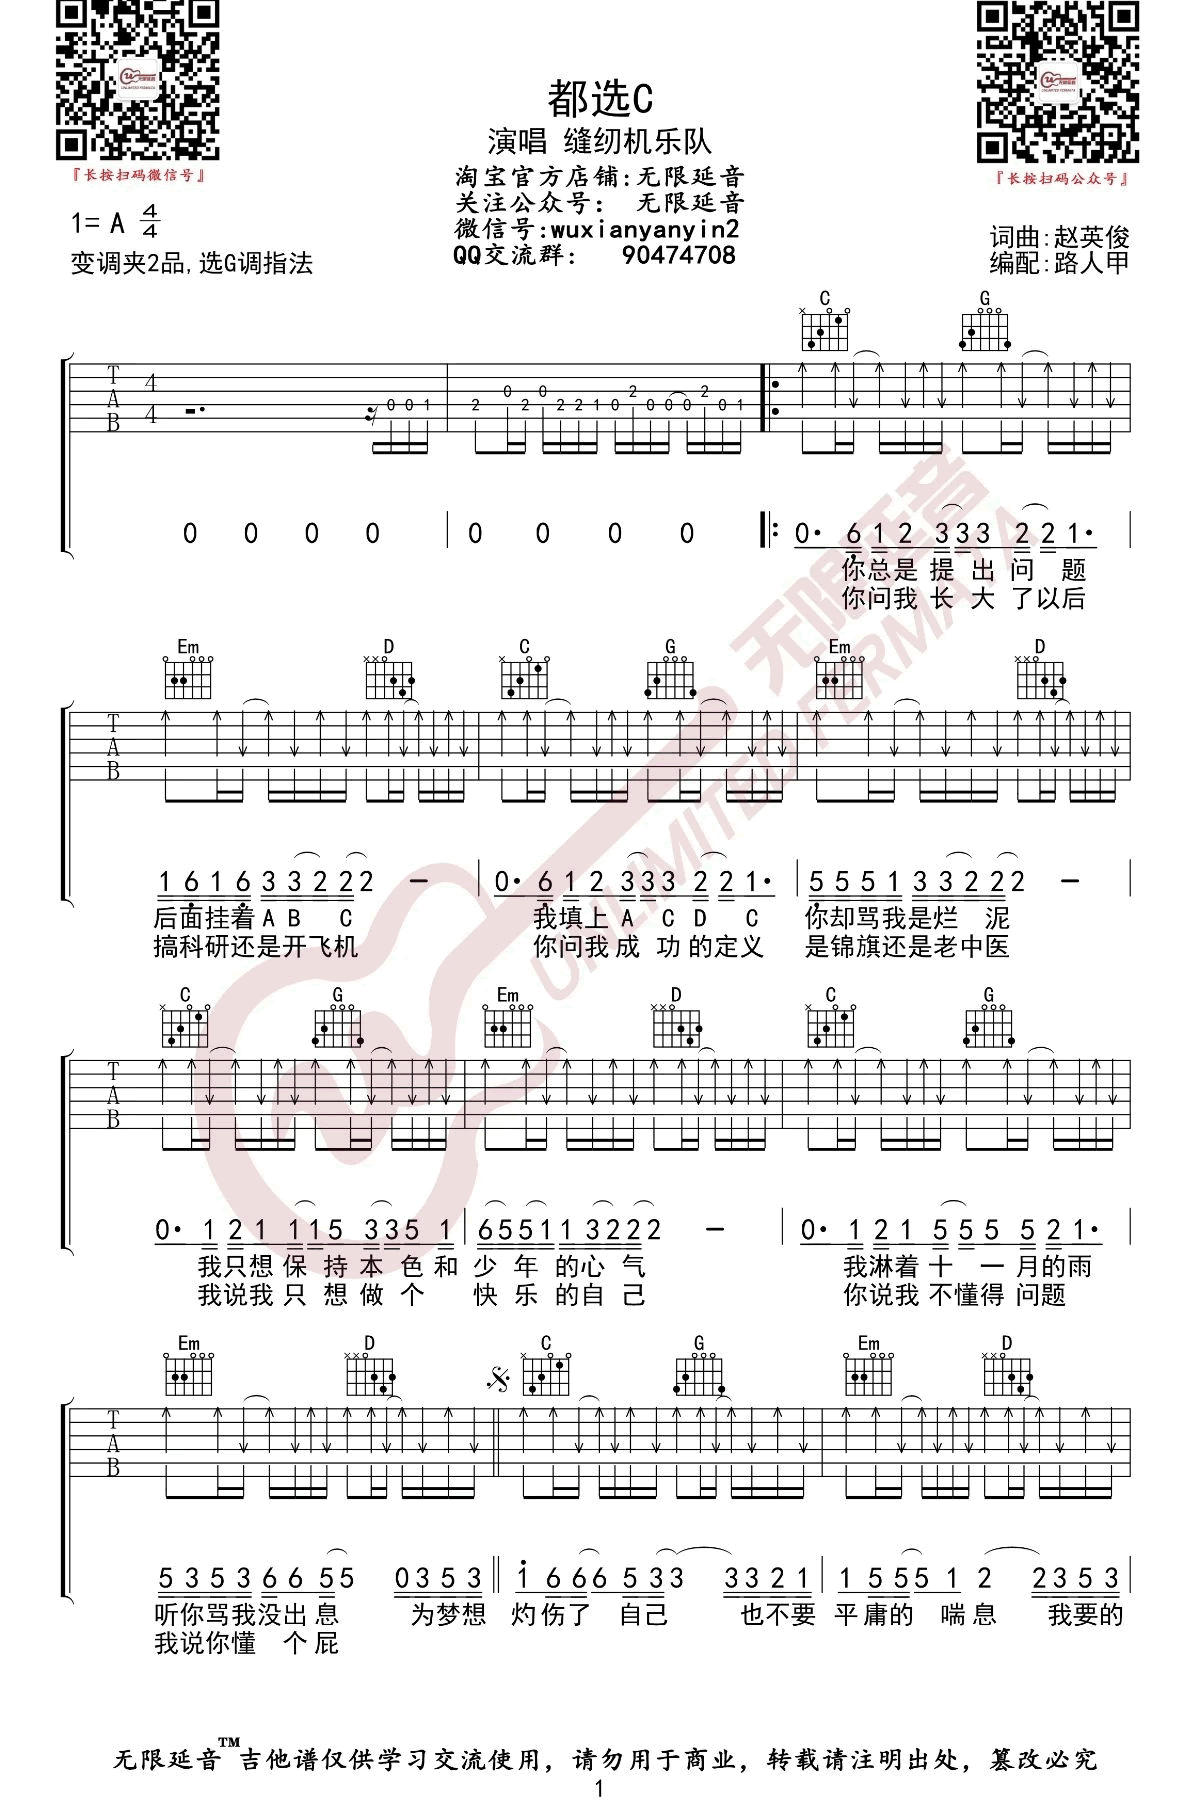 大鹏《都选C》吉他谱(A调)-Guitar Music Score - GTP吉他谱